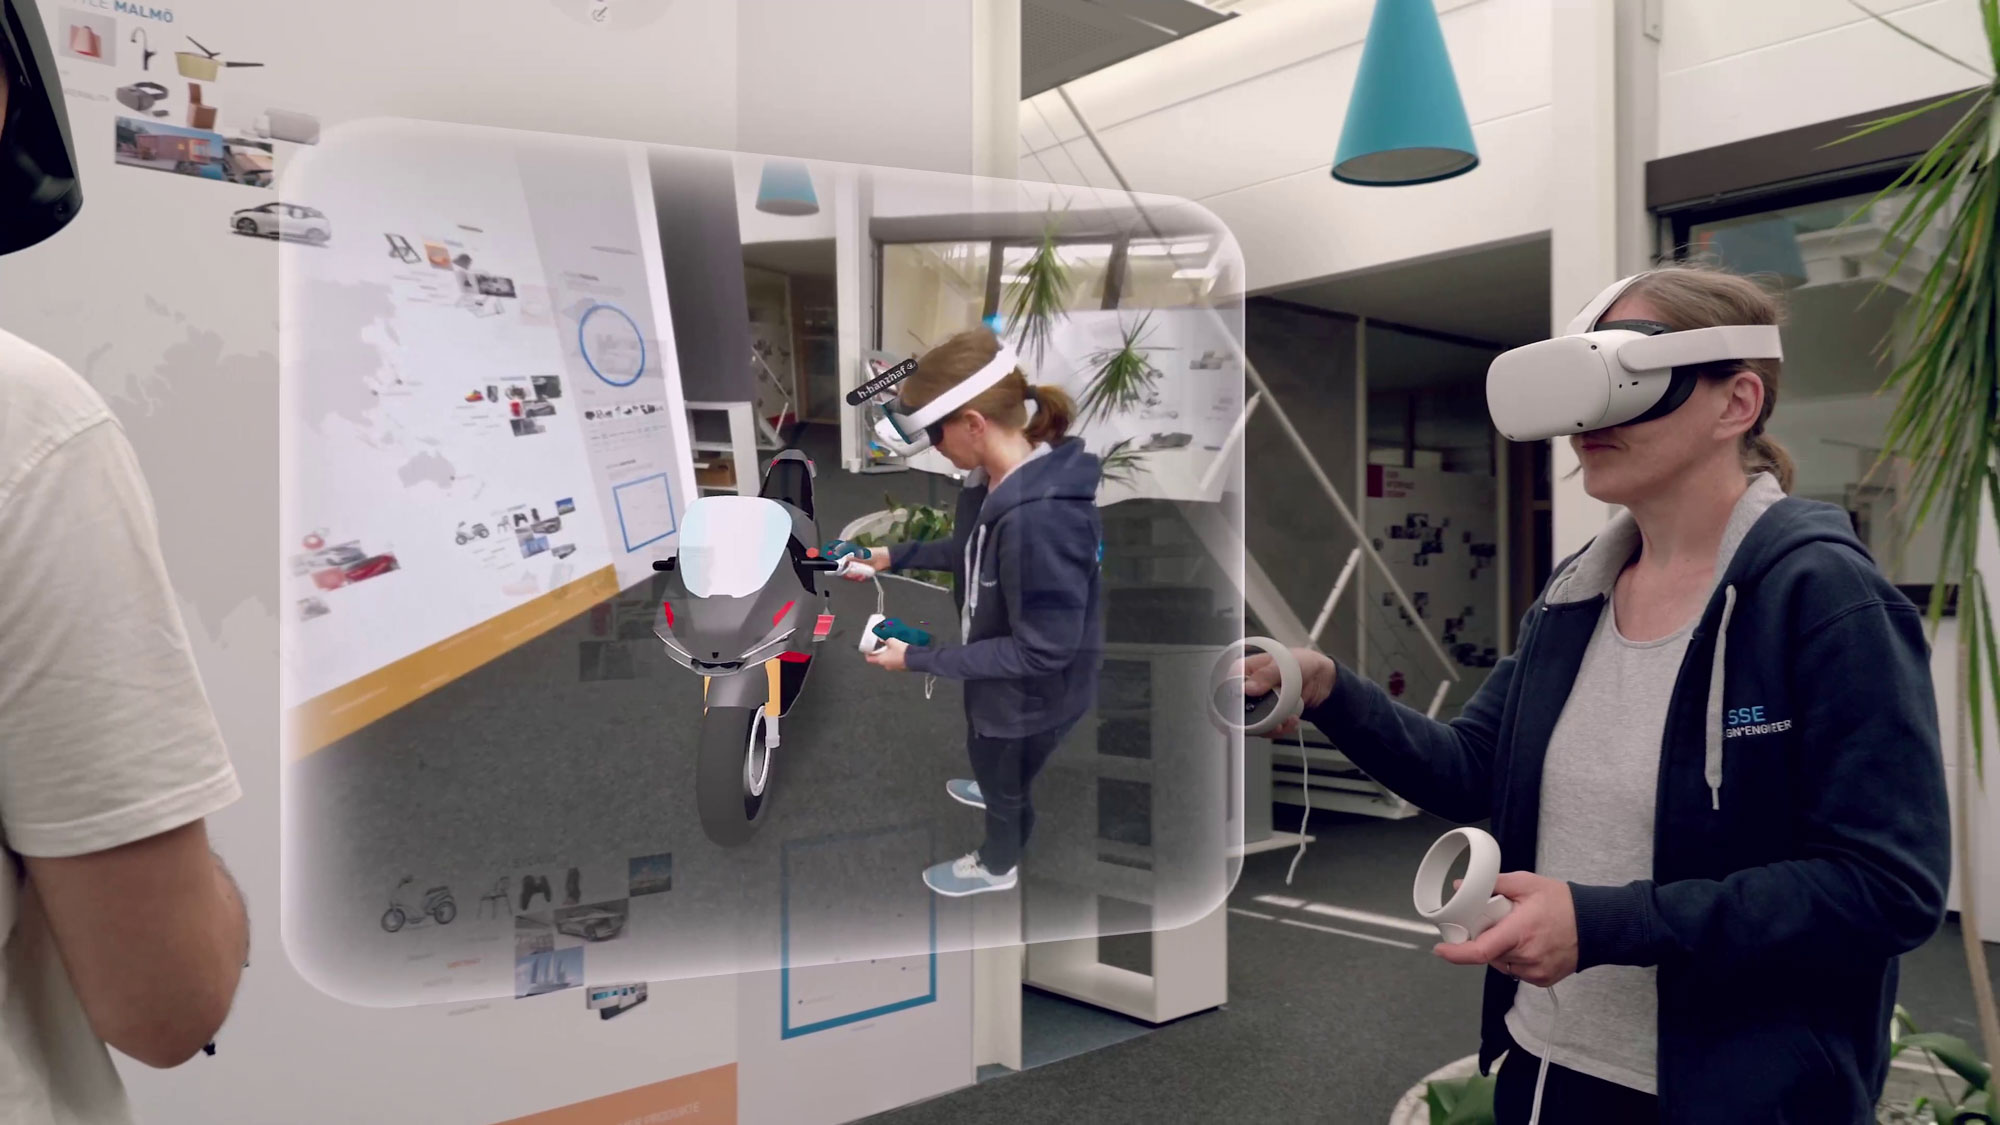 Frau mit VR-Headset und Handcontroller bei der Interaktion mit einem holografischen 3D-Display in einer Büroumgebung zu Produktdesignzwecken.